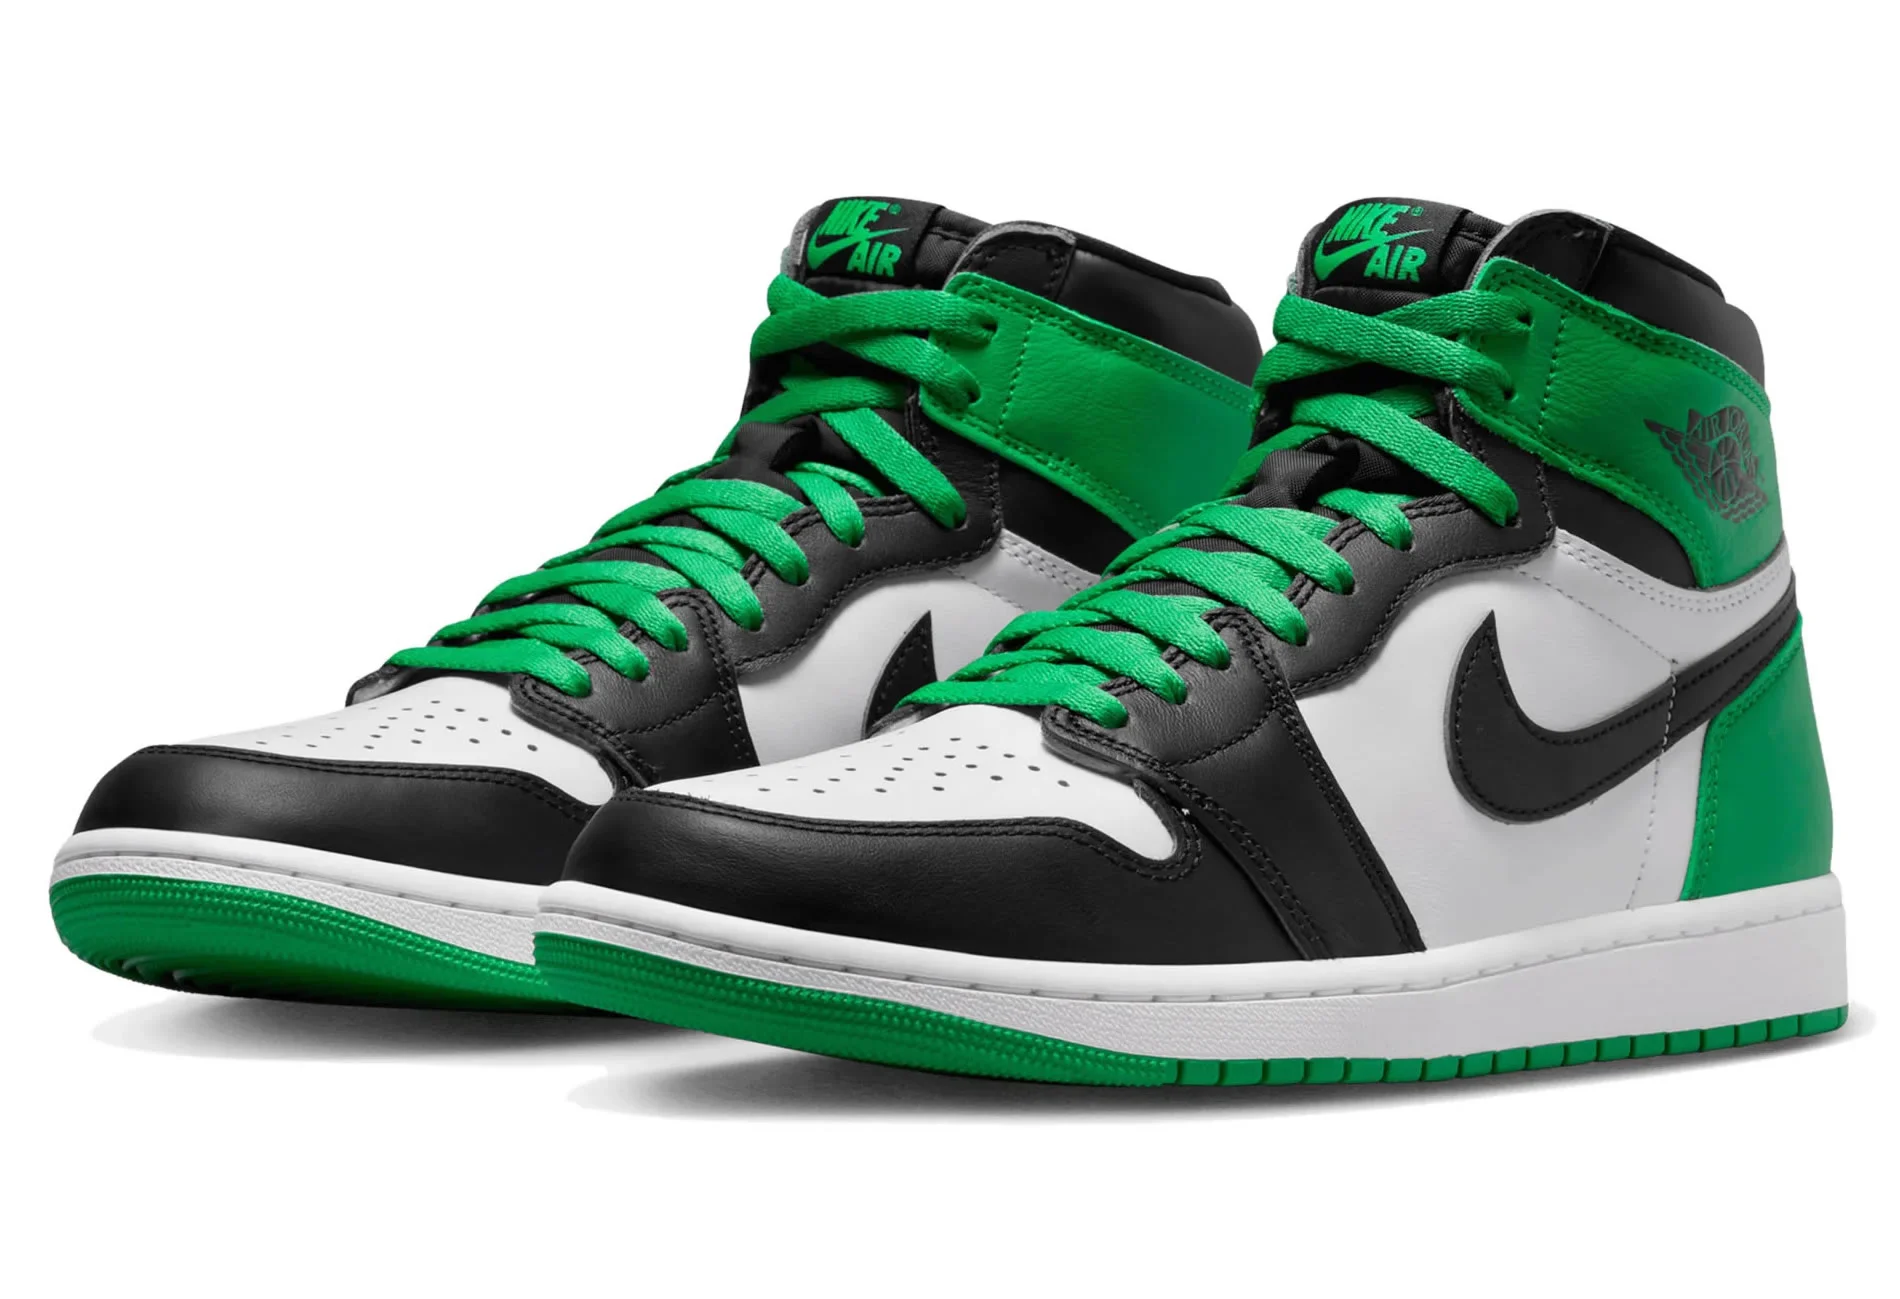 Air Jordan 1 Retro High Og Lucky Green Dz5485 031 Ljr Batch Sneakers (3) - www.ljrofficial.com